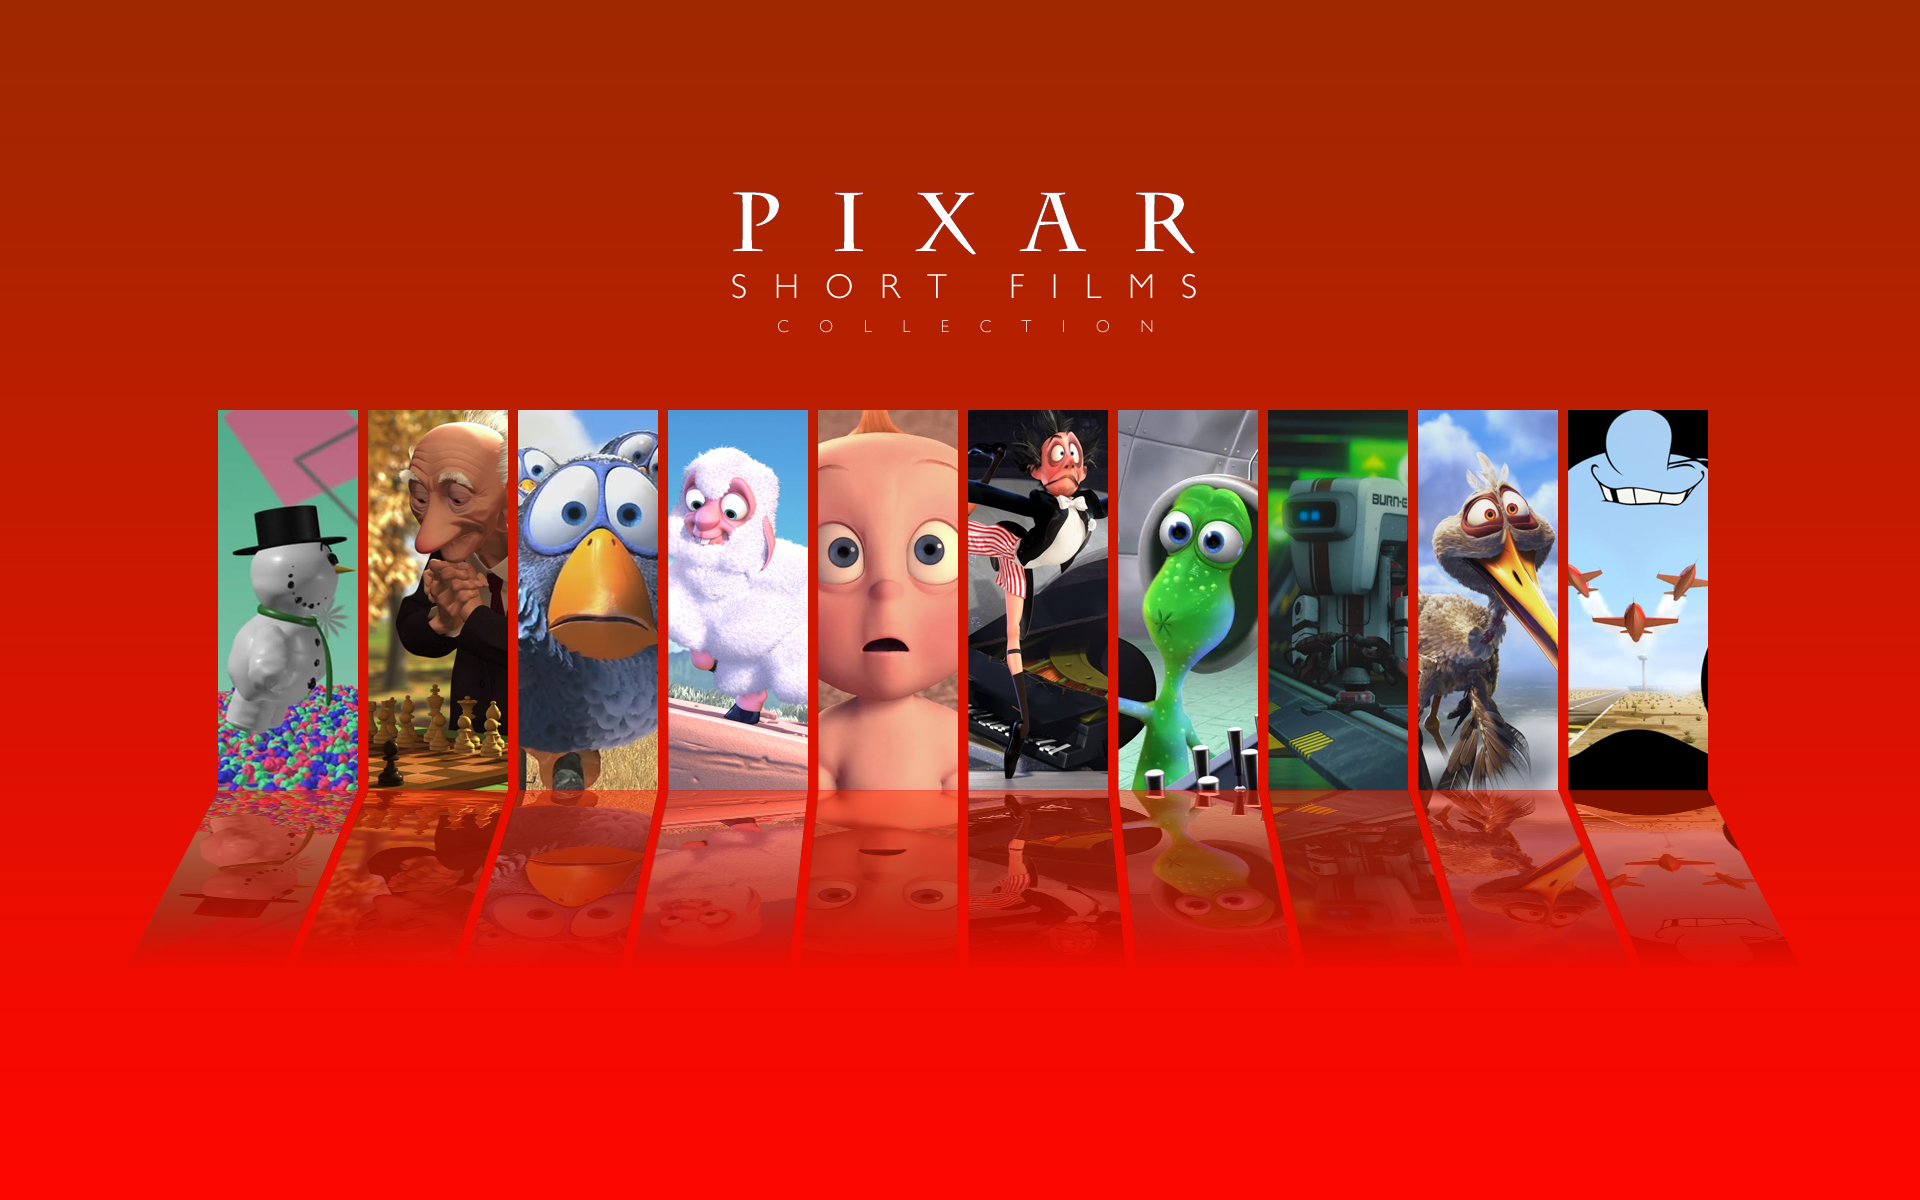 Short films collection. Коллекция короткометражных мультфильмов Pixar том 1. Пиксар коллекция мультфильмов. Дисней Пиксар. Уолт Дисней и Пиксар 1995.